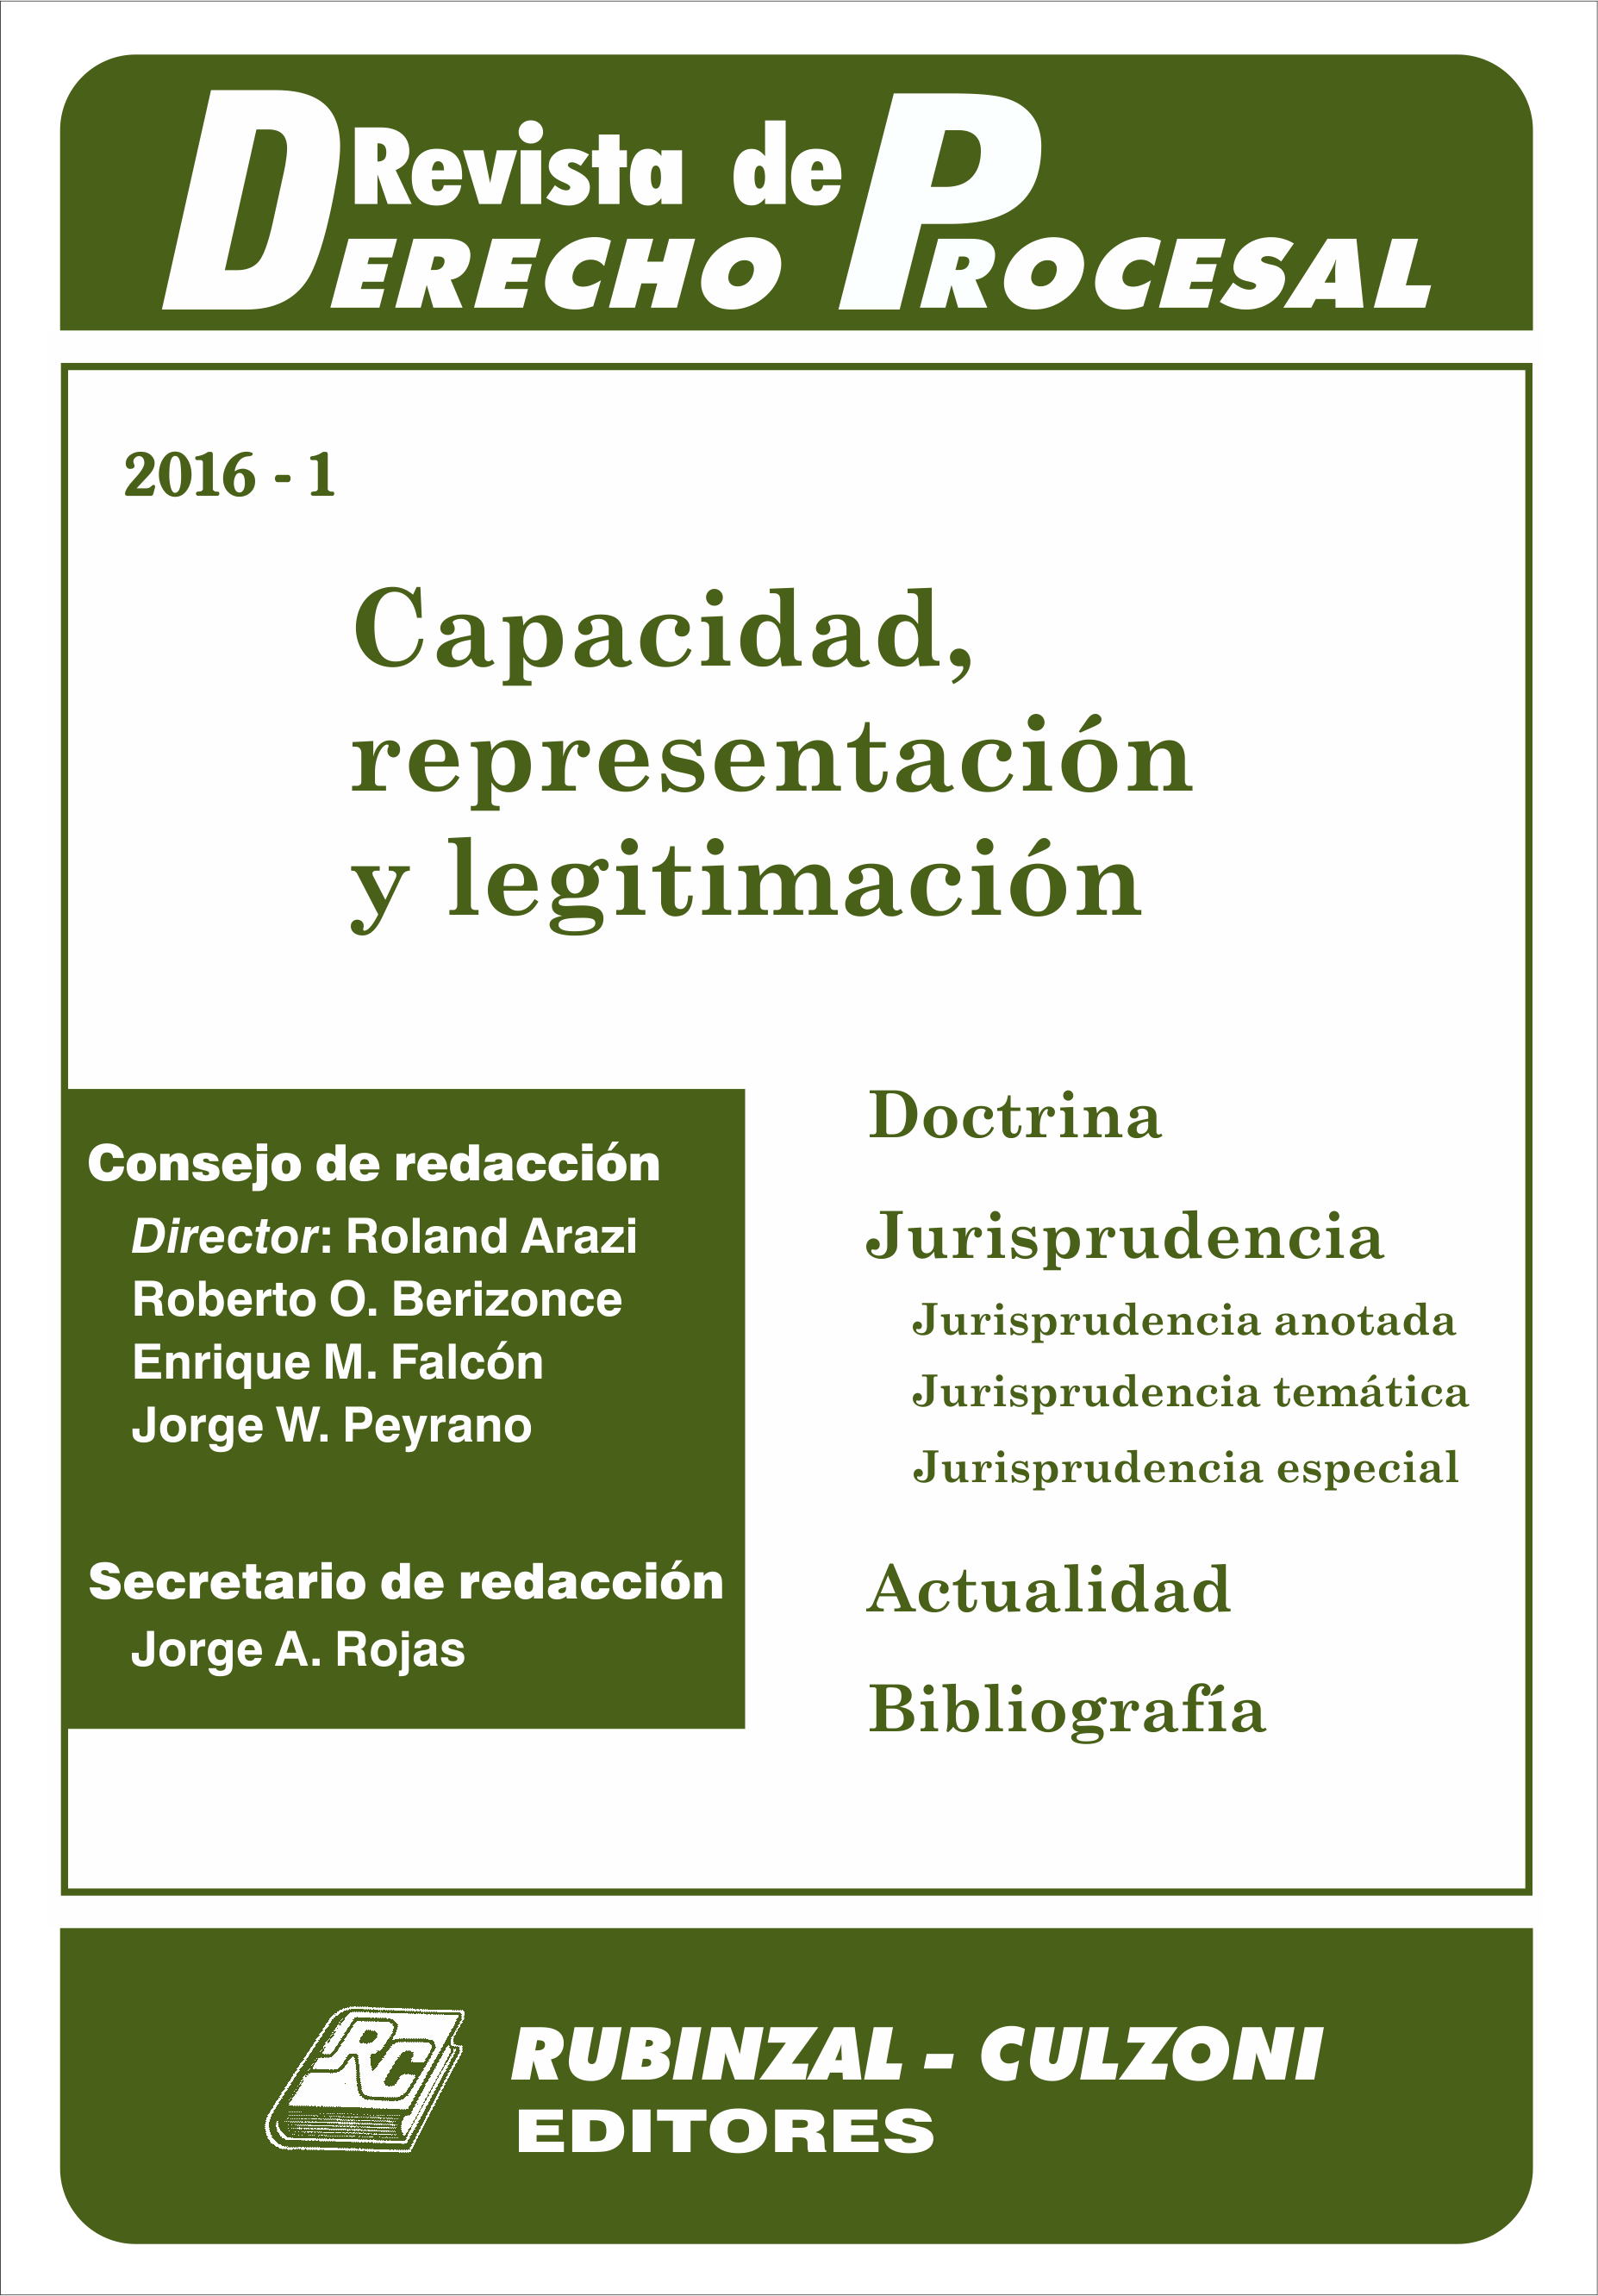 Revista de Derecho Procesal - Capacidad